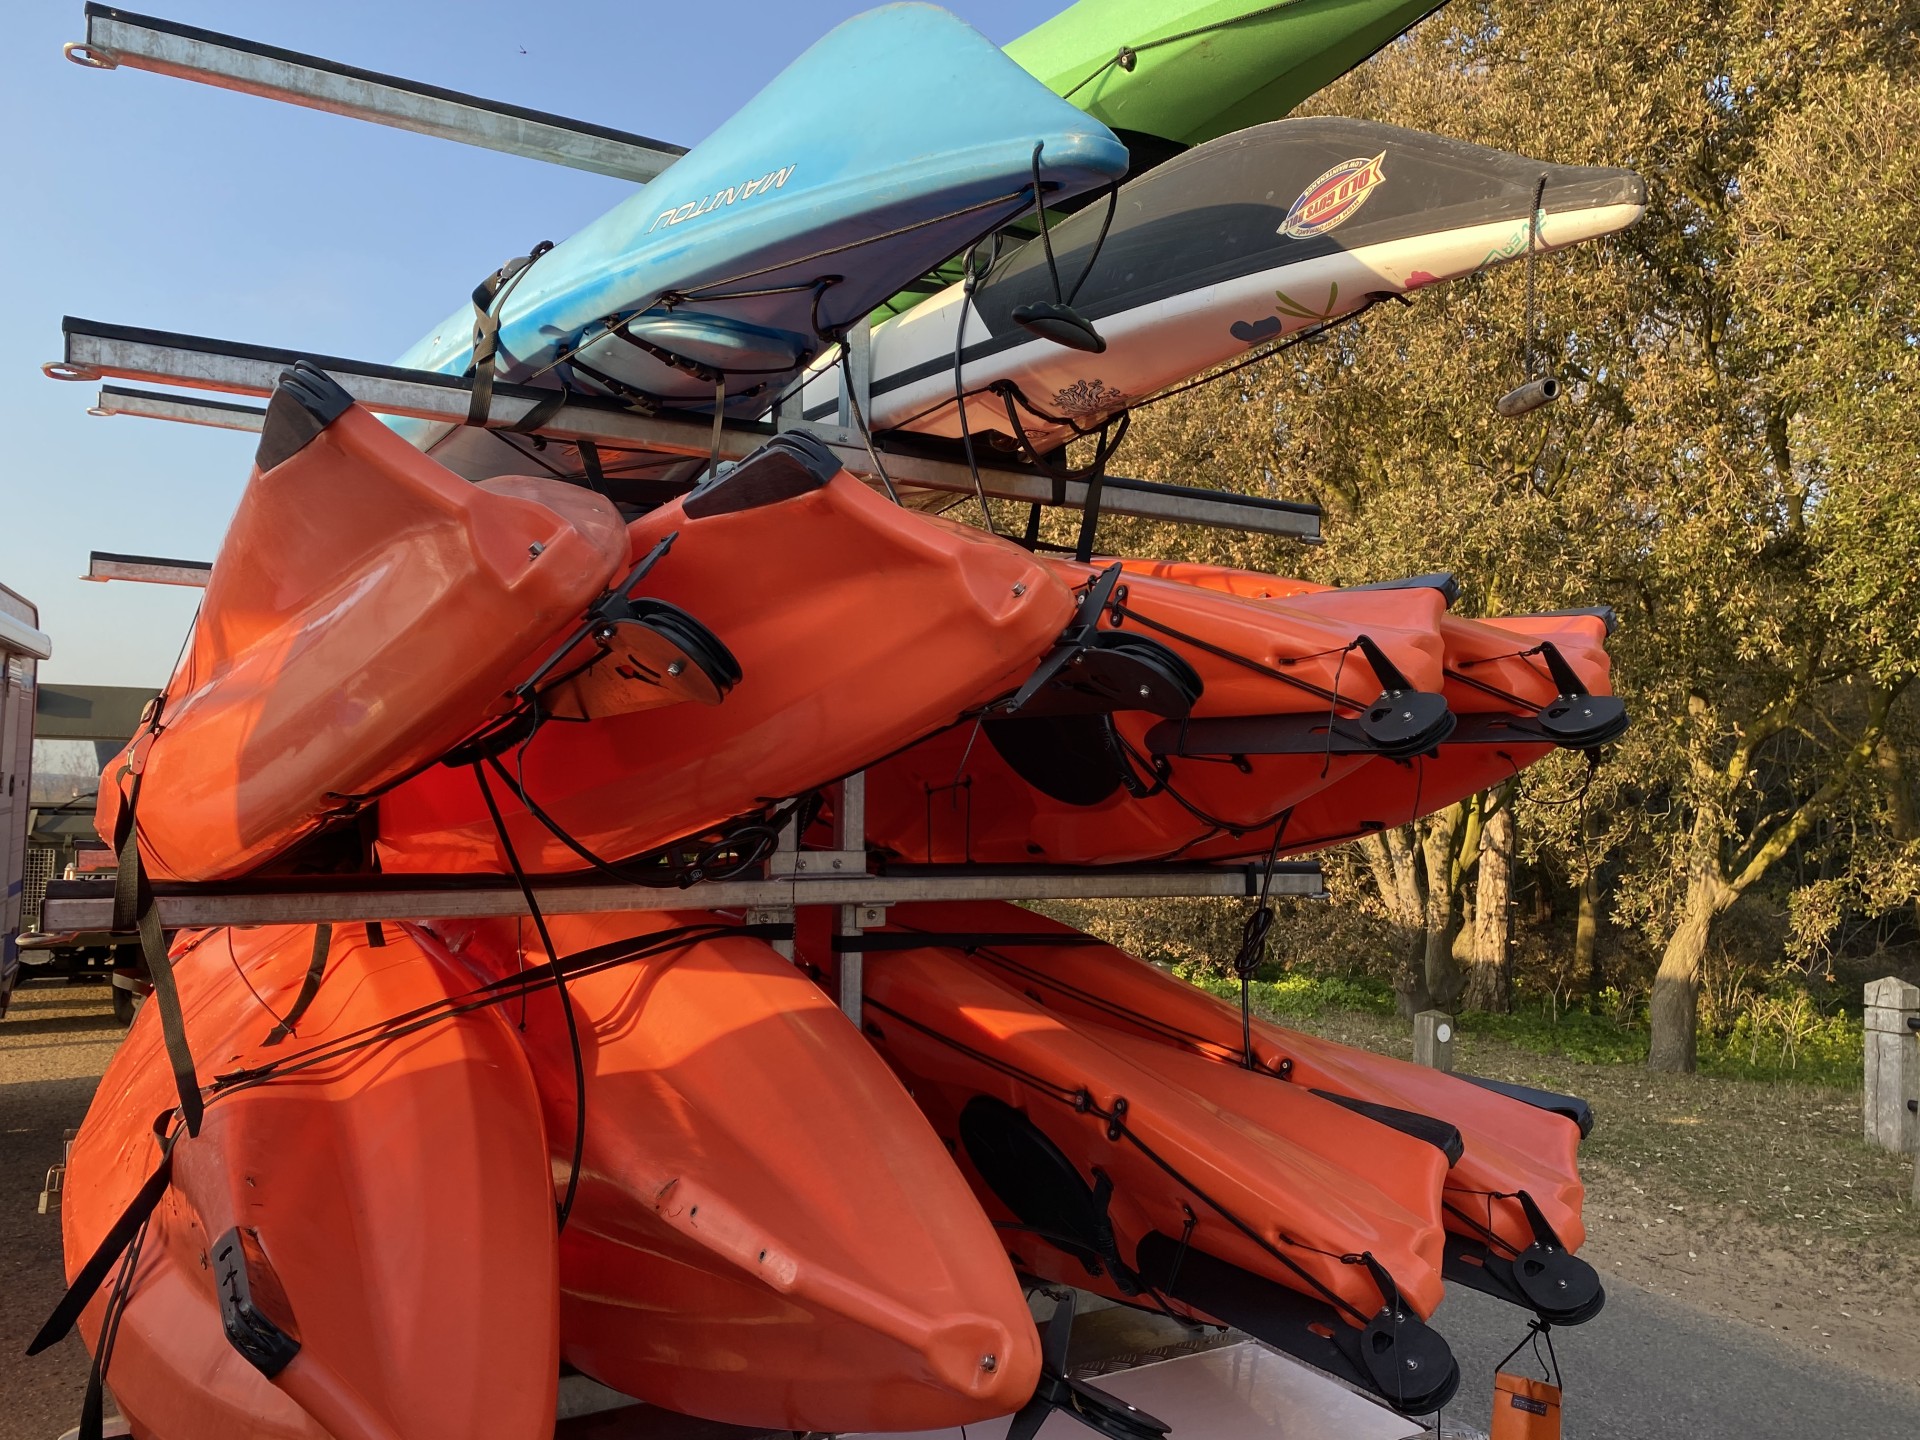 A trailer of orange sea kayaks NOMAD Sea Kayaking